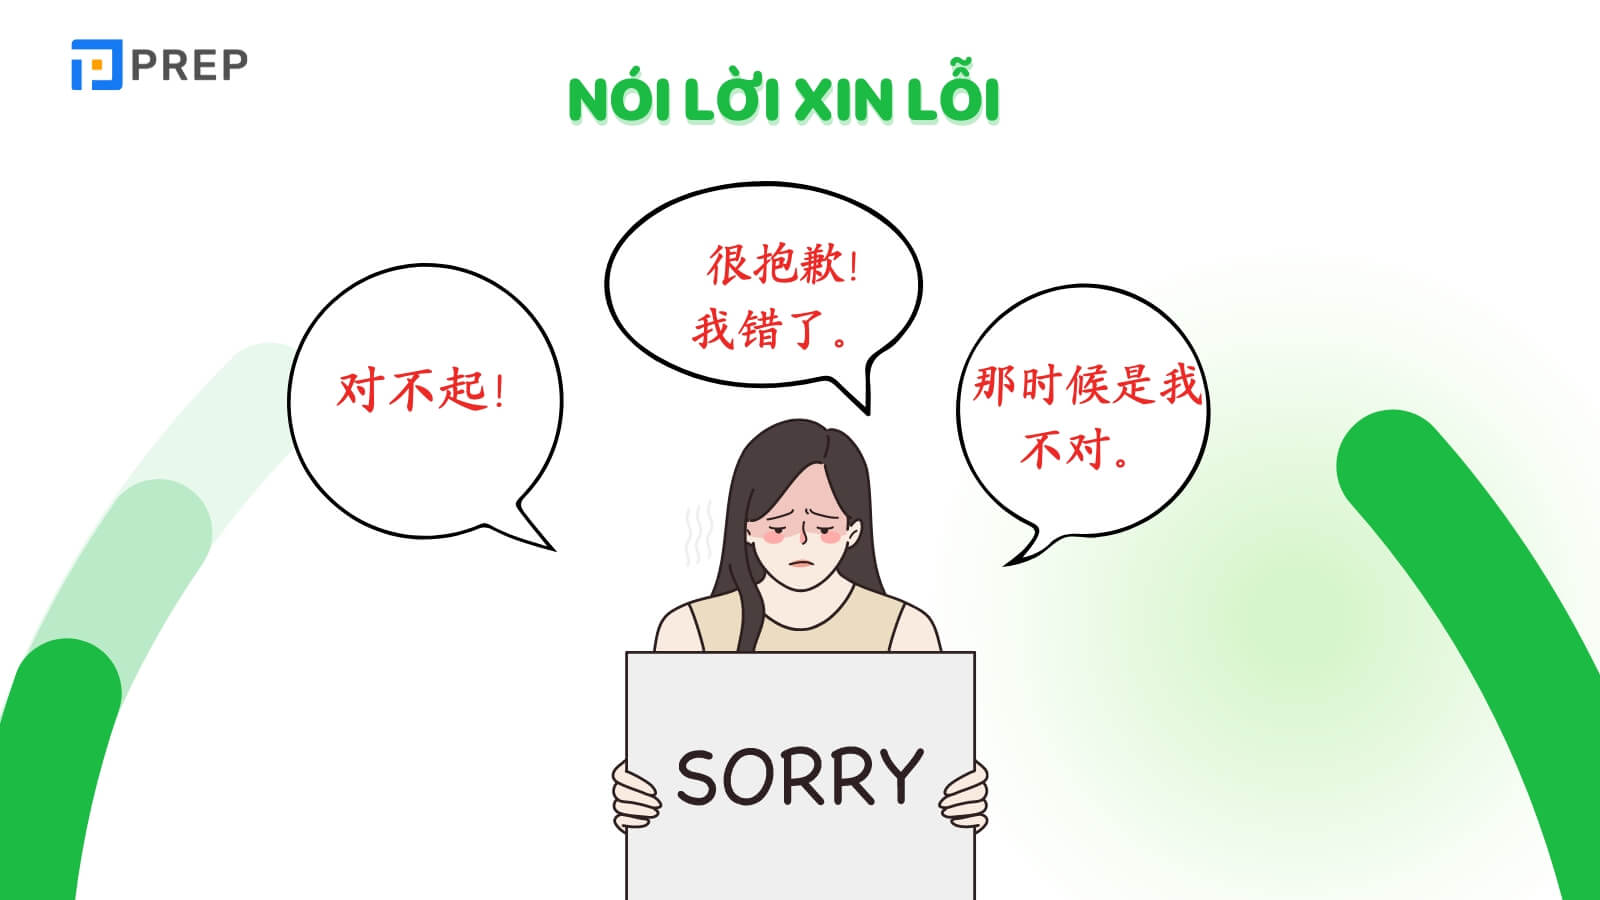 Những câu giao tiếp tiếng Trung cơ bản khi nói lời xin lỗi